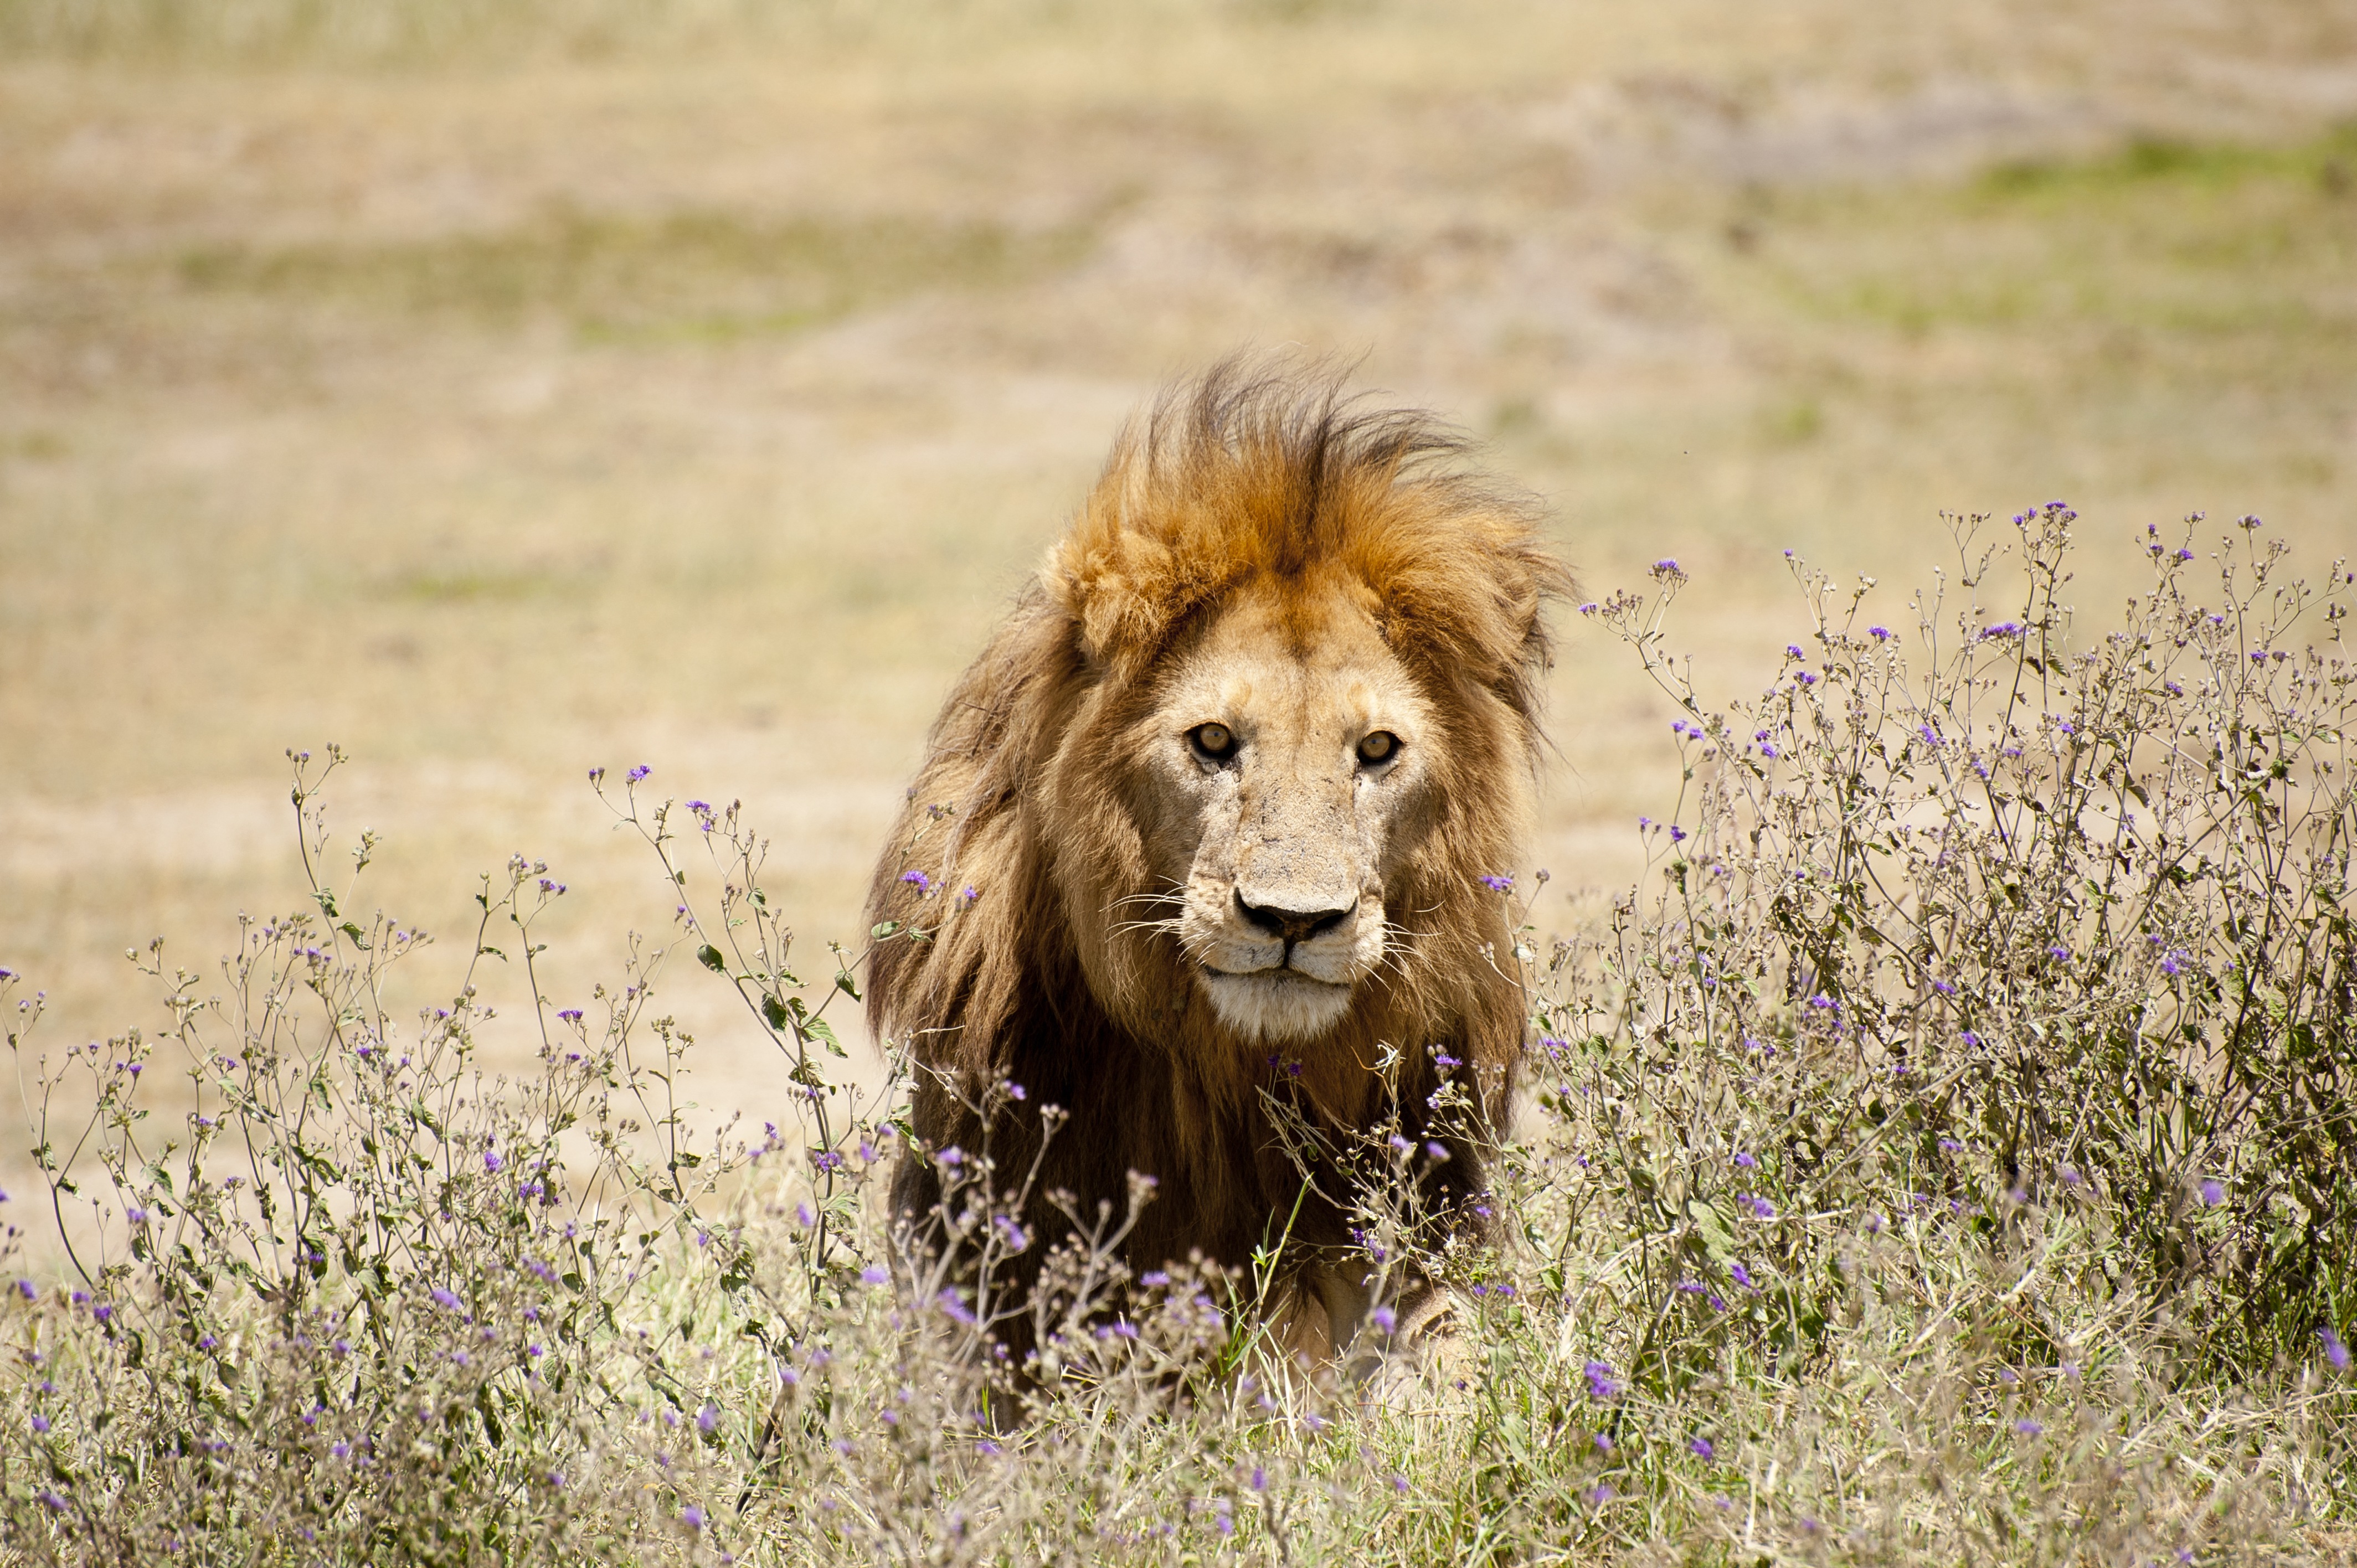 36 oroszlánt telepítenek át Tanzániában, mert az emberlakta területek már túl közel vannak az életterükhöz